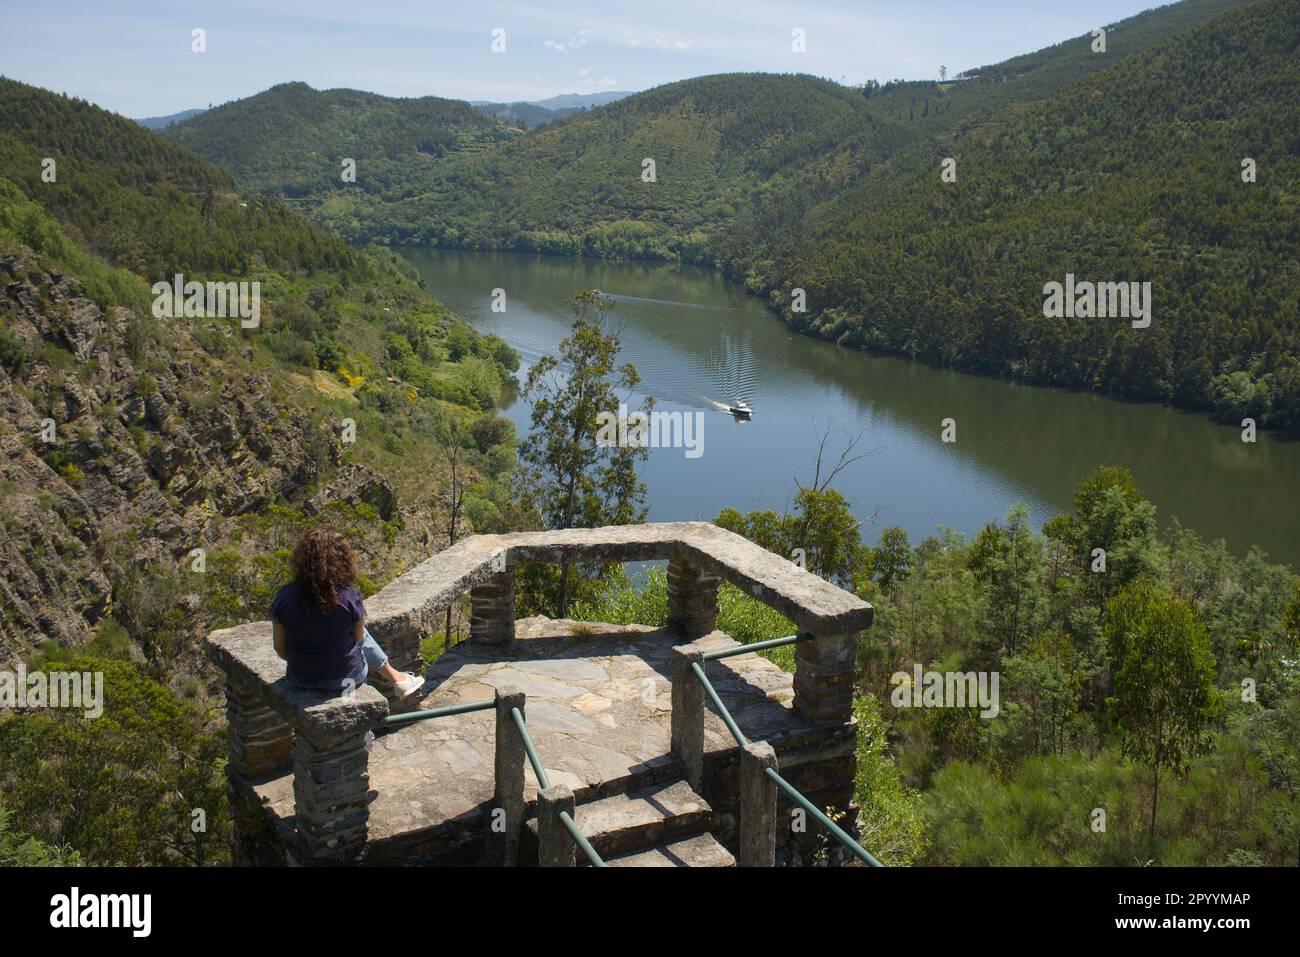 Sebolido, Portogallo - 01 maggio 2023 : una persona al punto di vista ammirando il fiume Douro e le sue belle rive, Penafiel, Portogallo Foto Stock